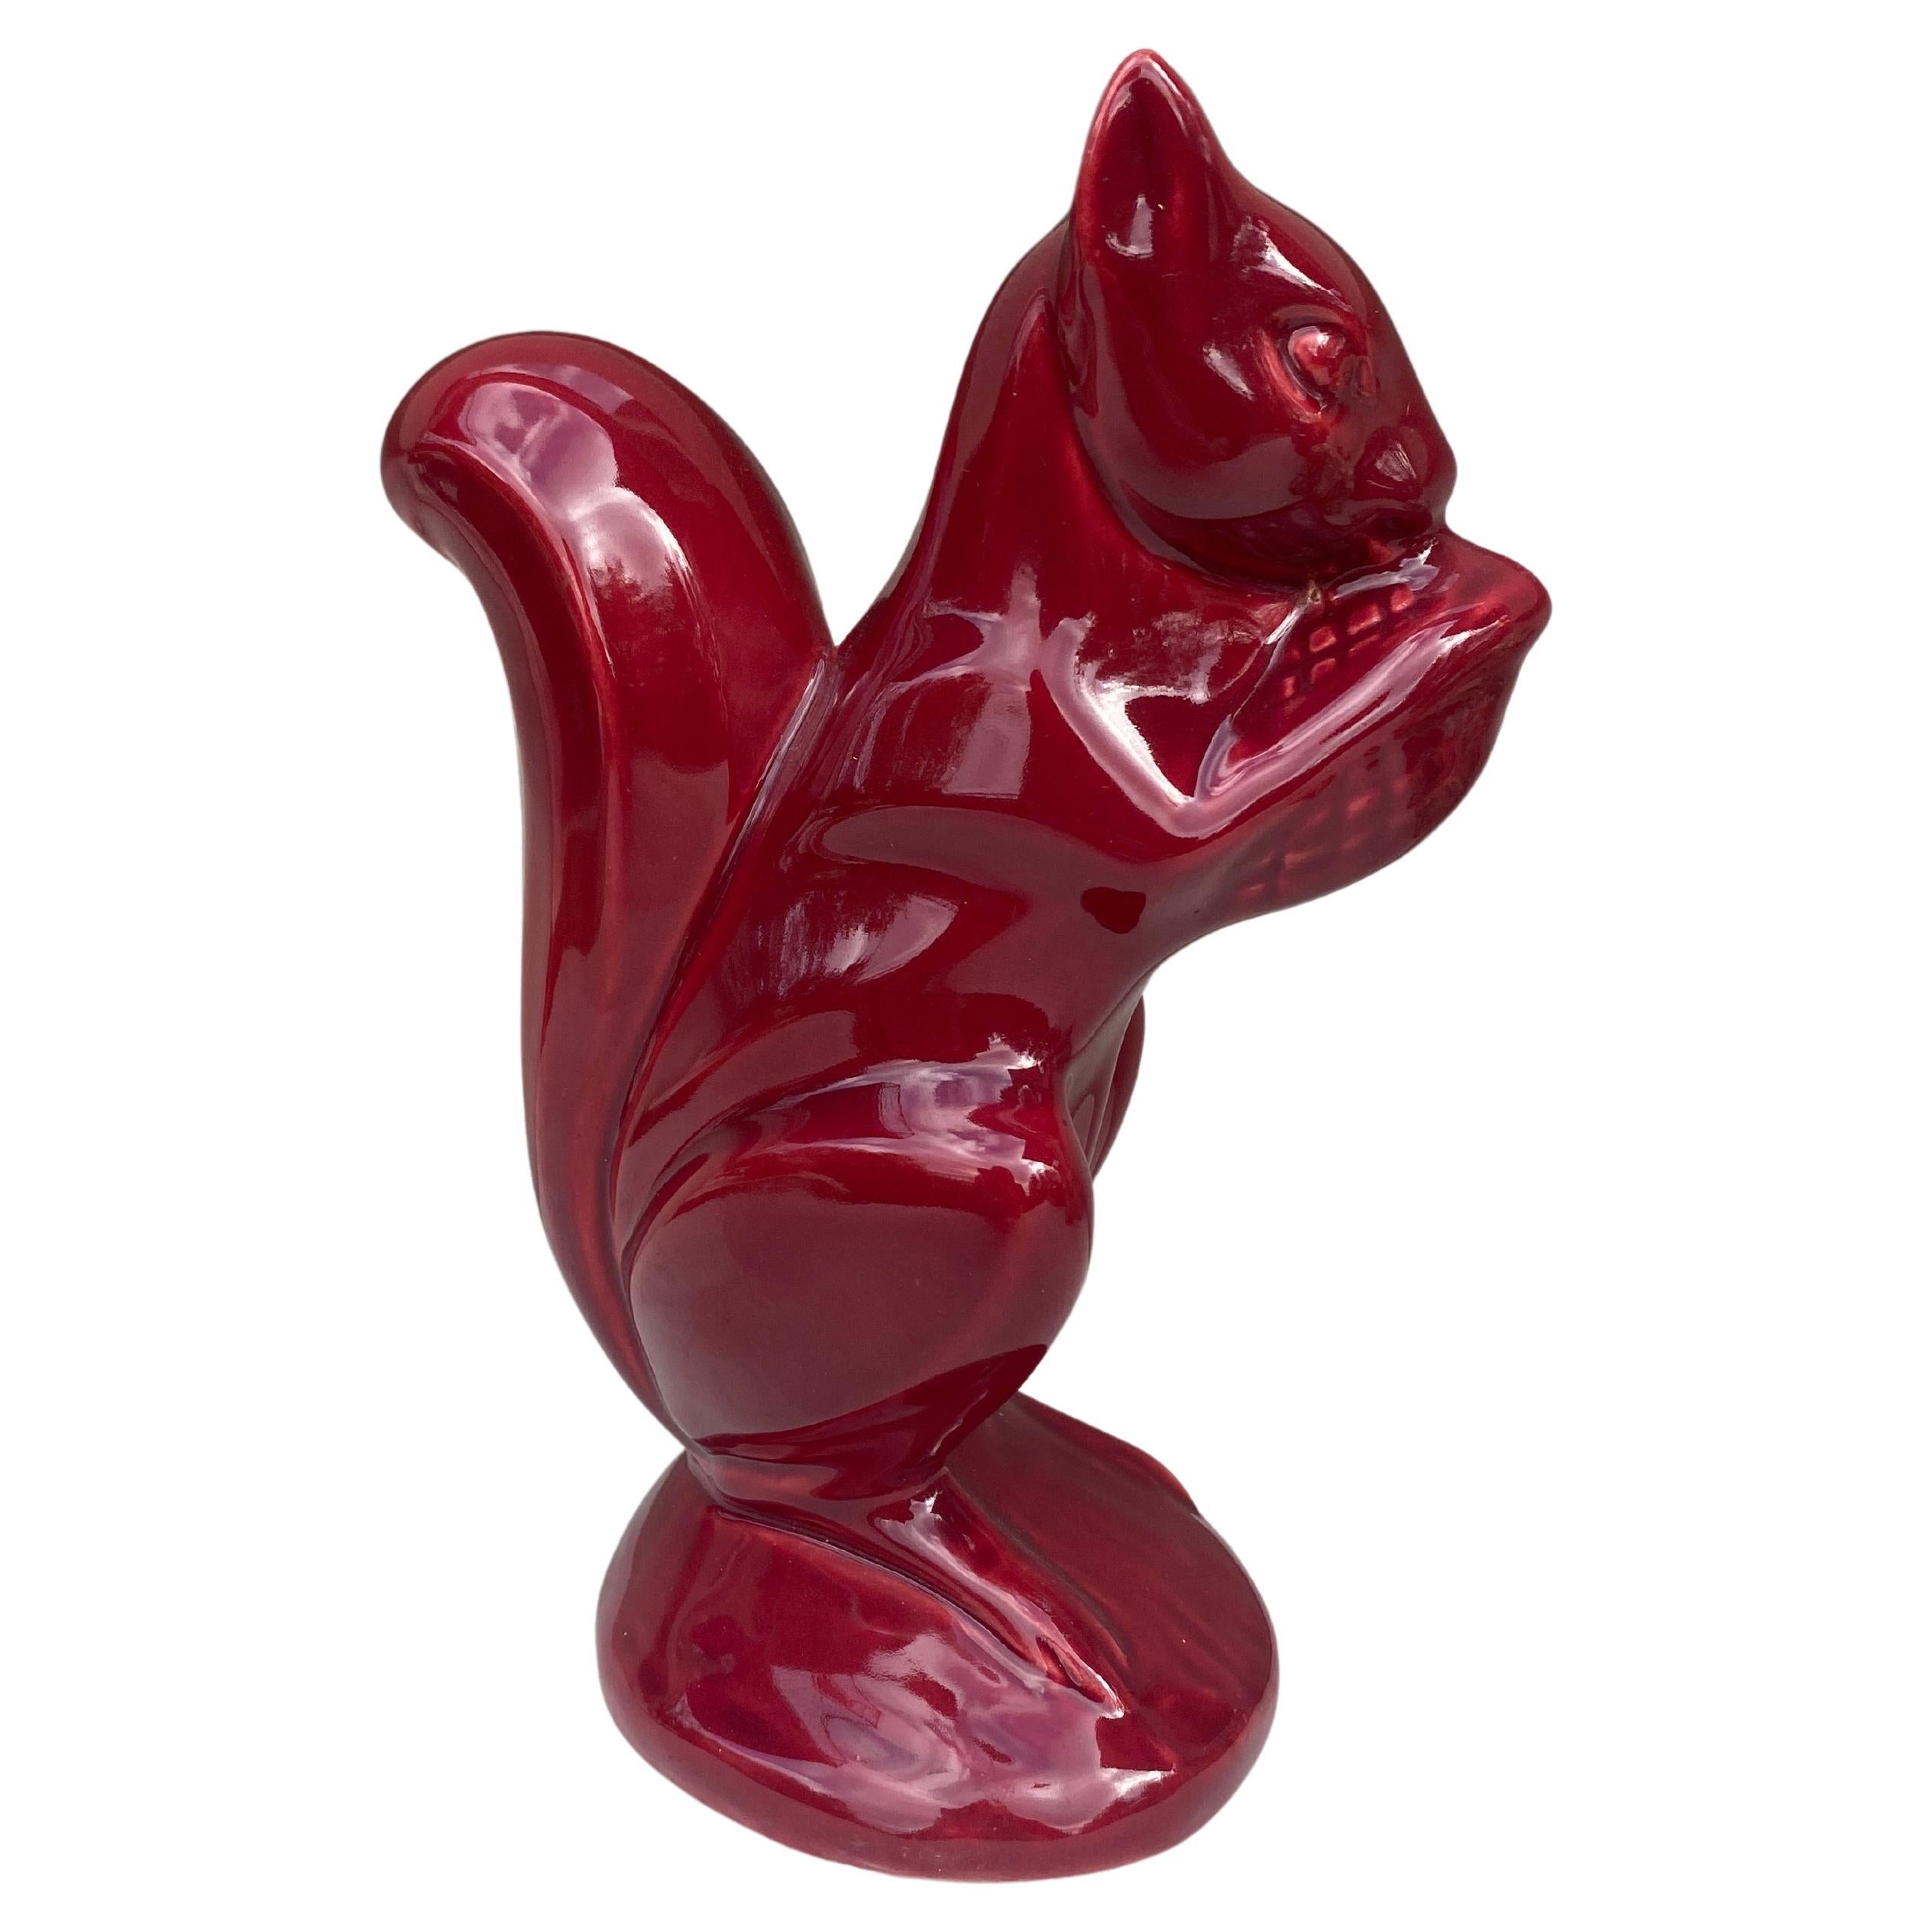 Grand écureuil de tirelire en majolique rouge, vers 1950